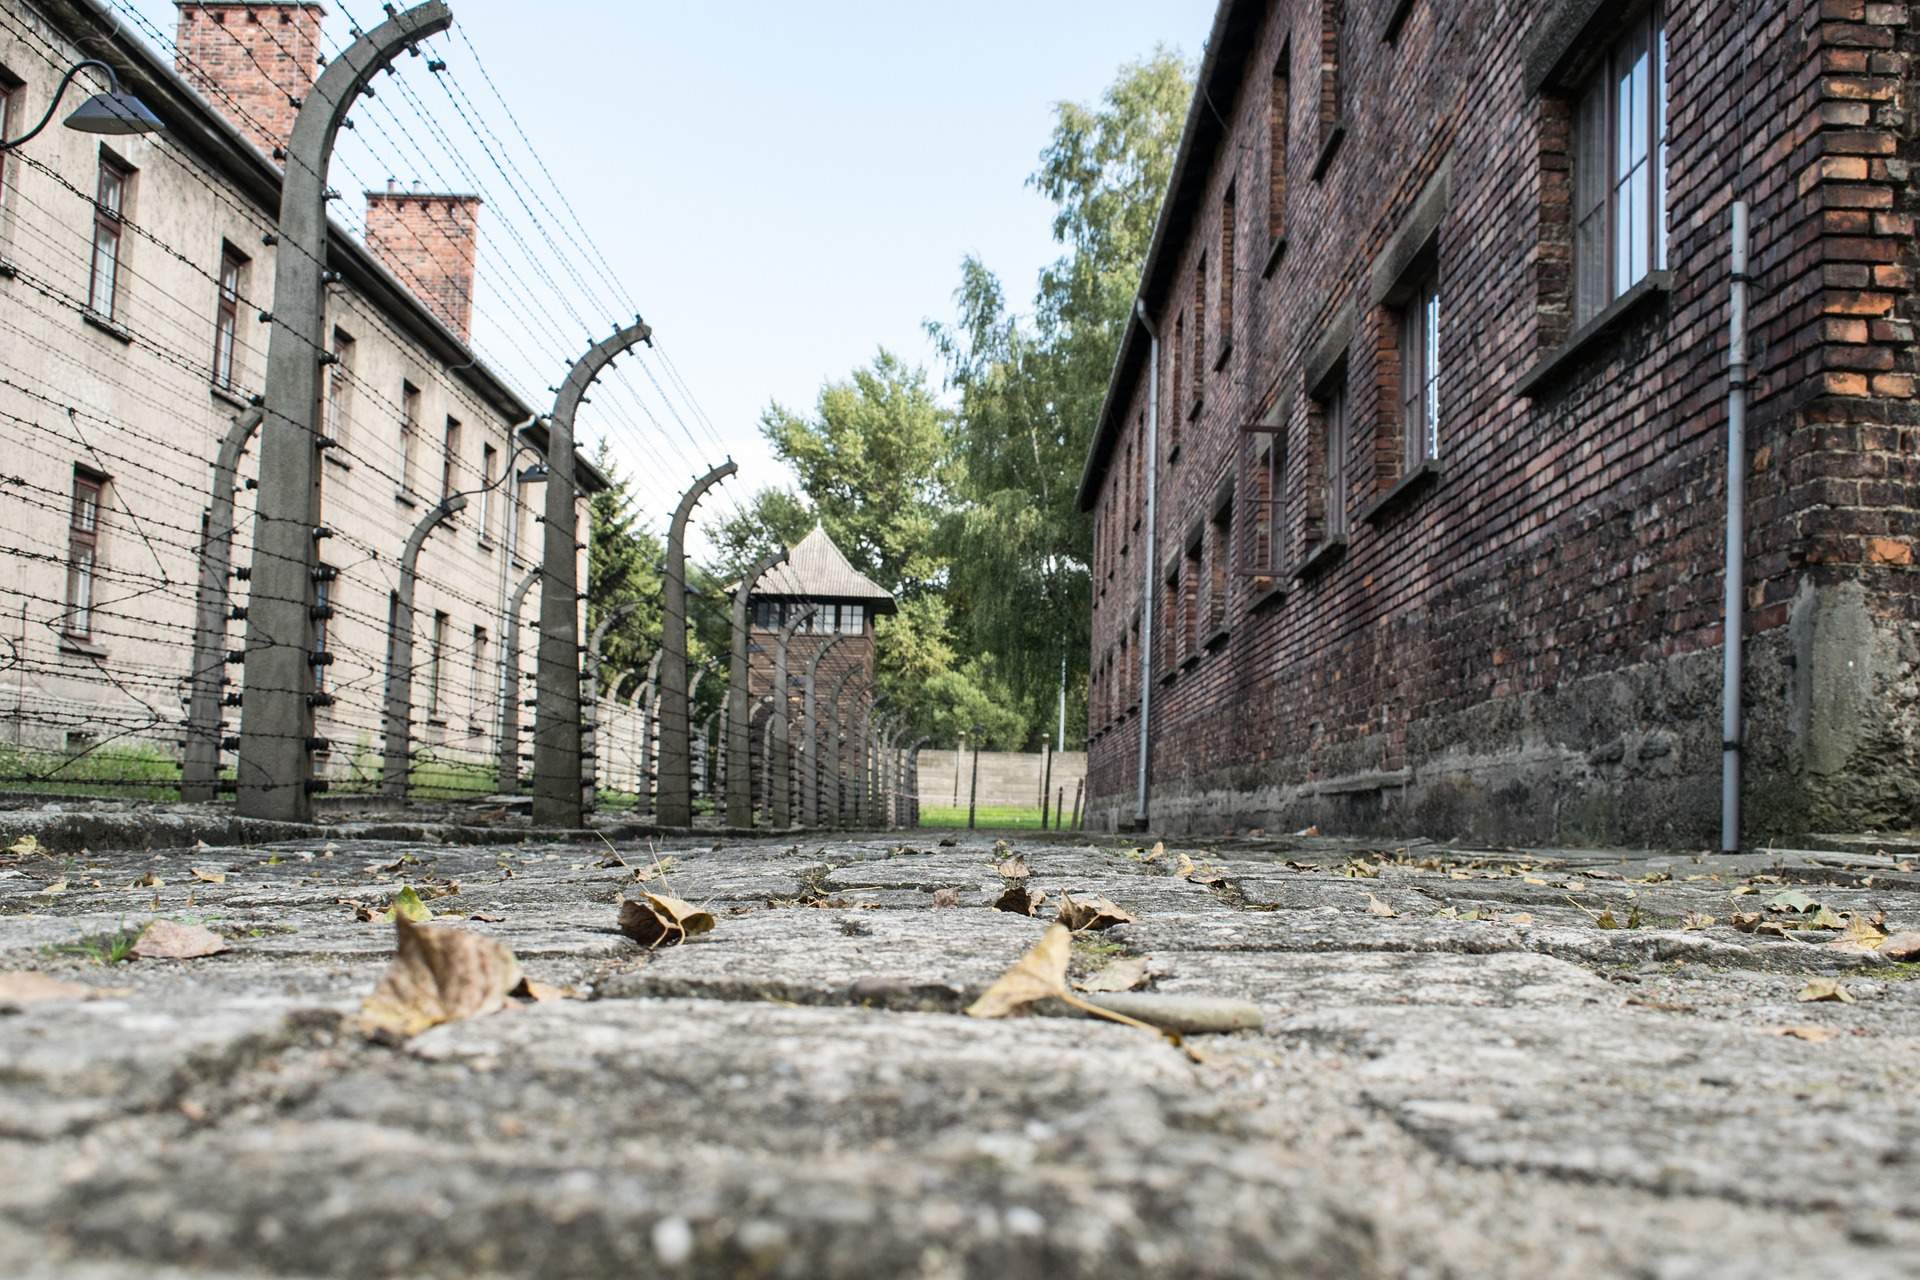 Busreis rondreis Polen - Auschwitz-Birkenau ©Larah Vidotto from Pixabay